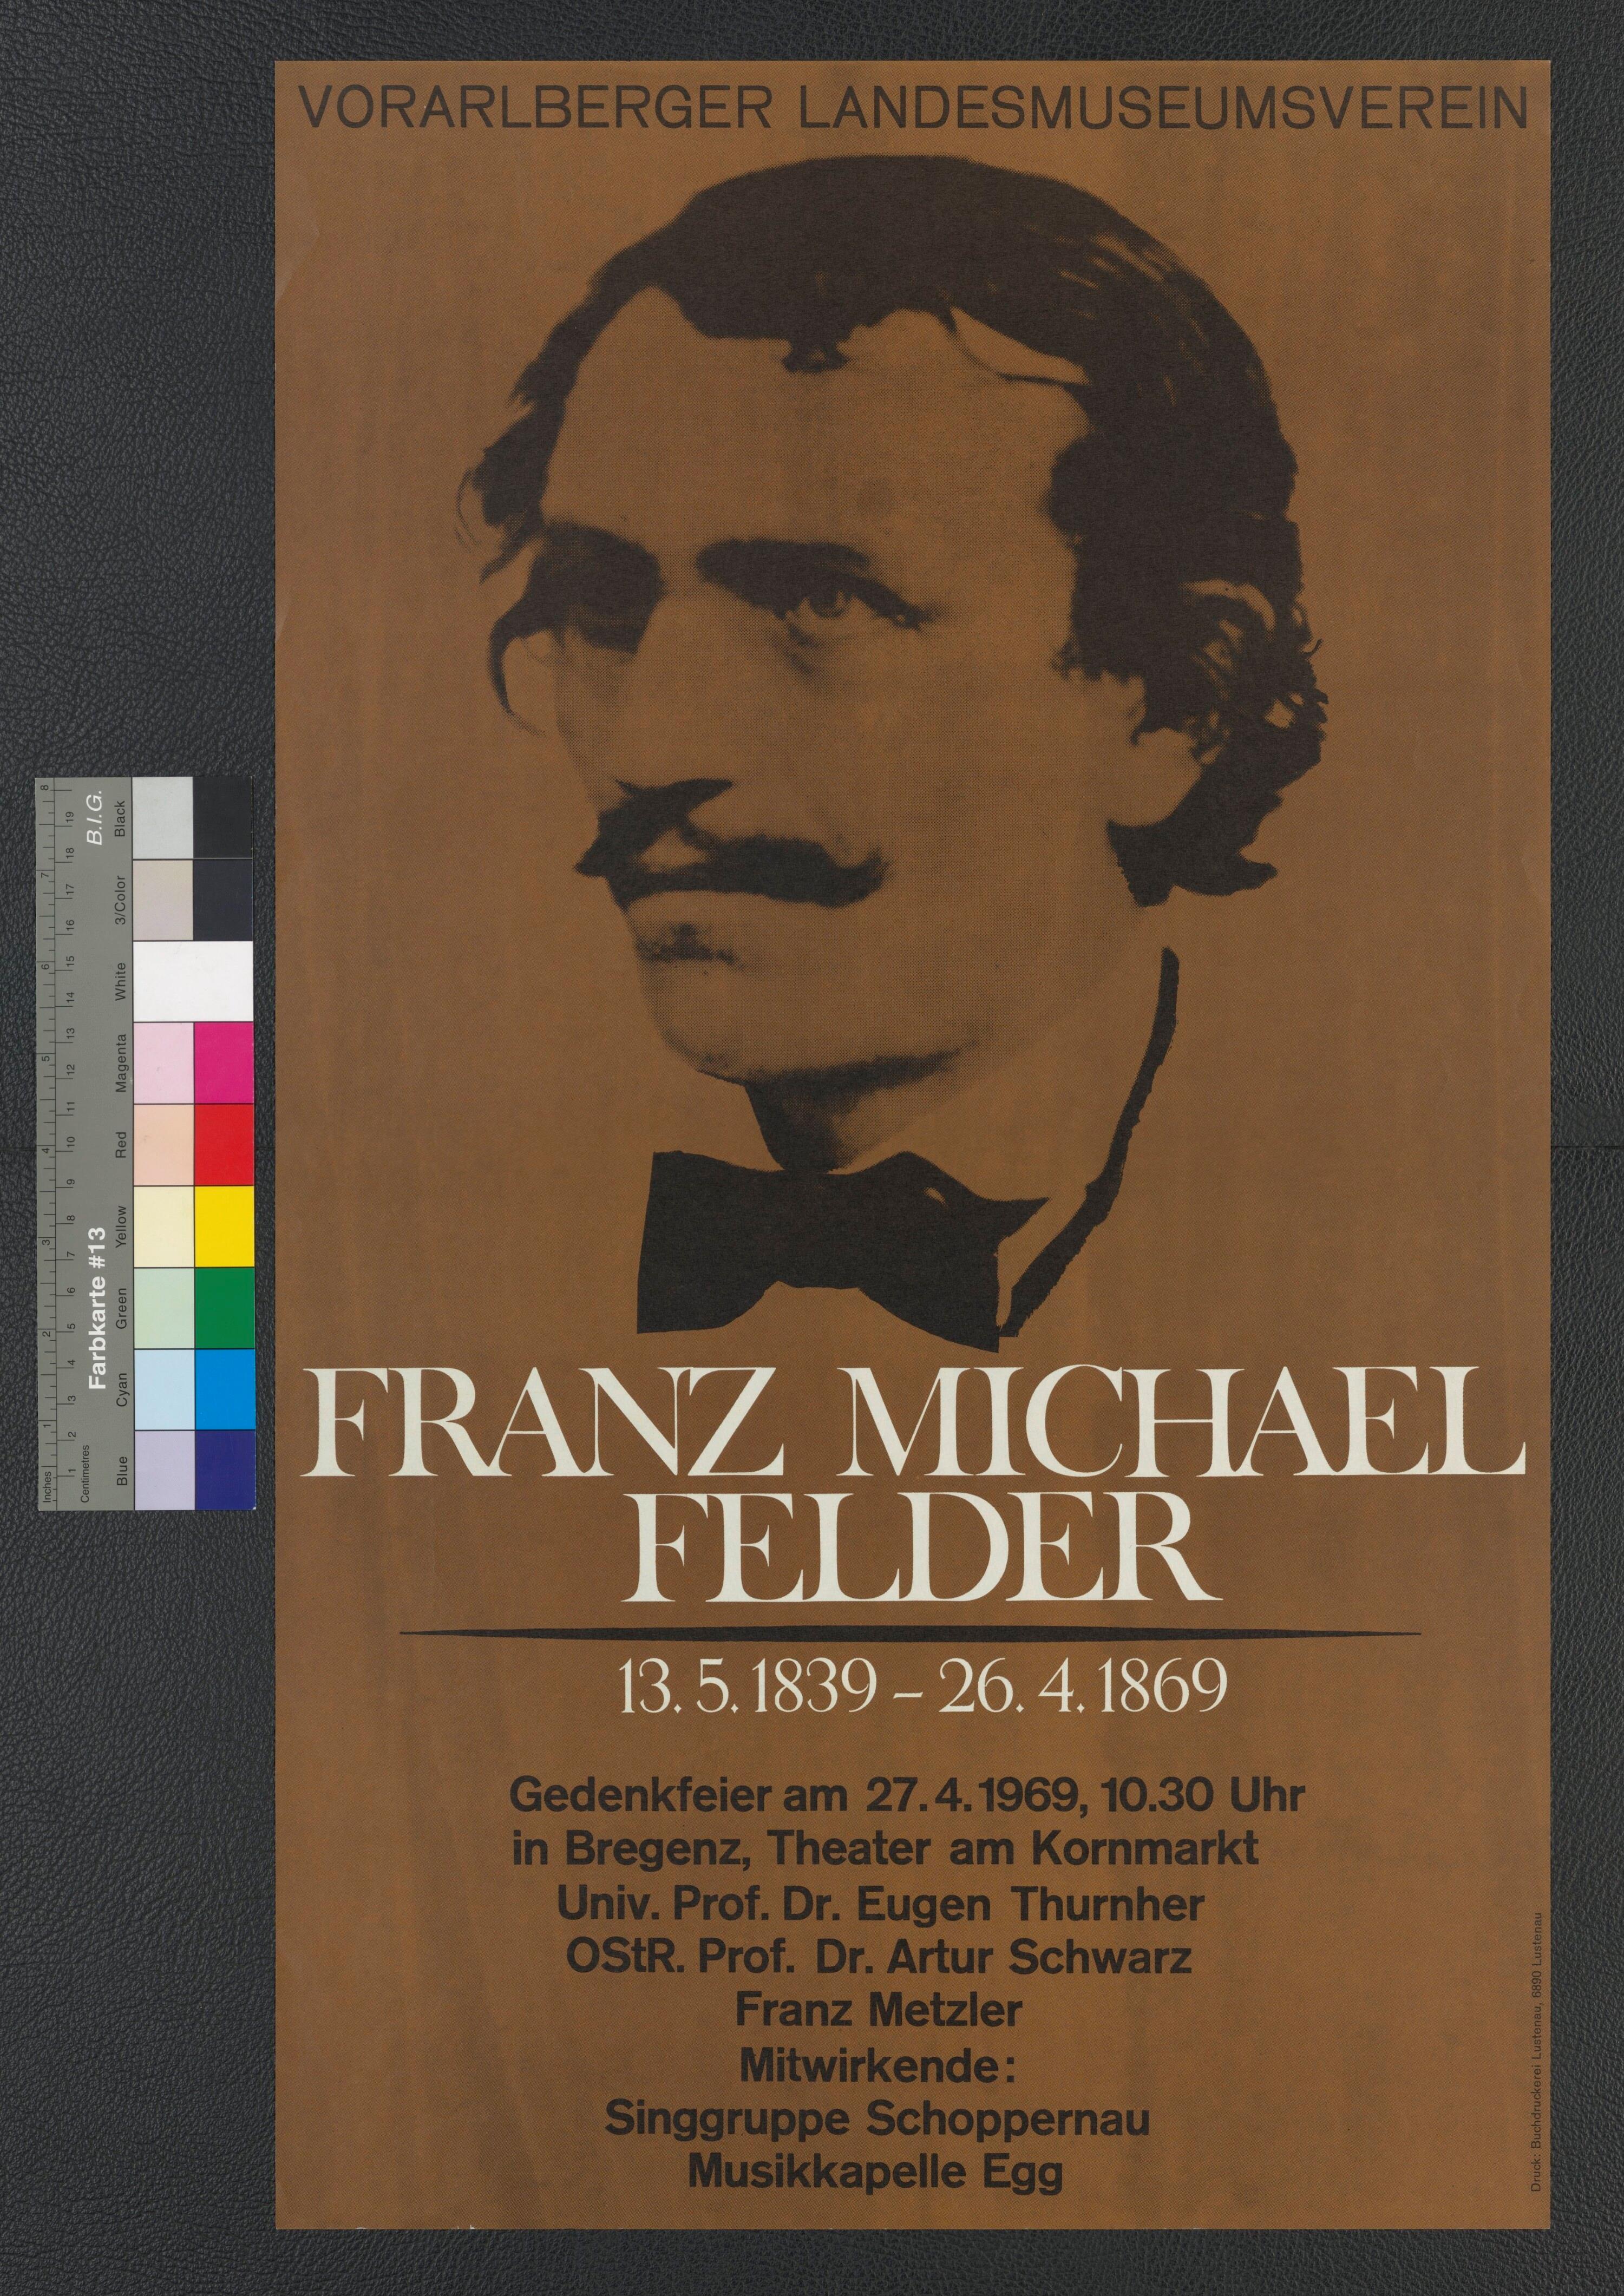 Veranstaltungsplakat Franz Michael Felder Gedenkfeier 1969 in Bregenz></div>


    <hr>
    <div class=